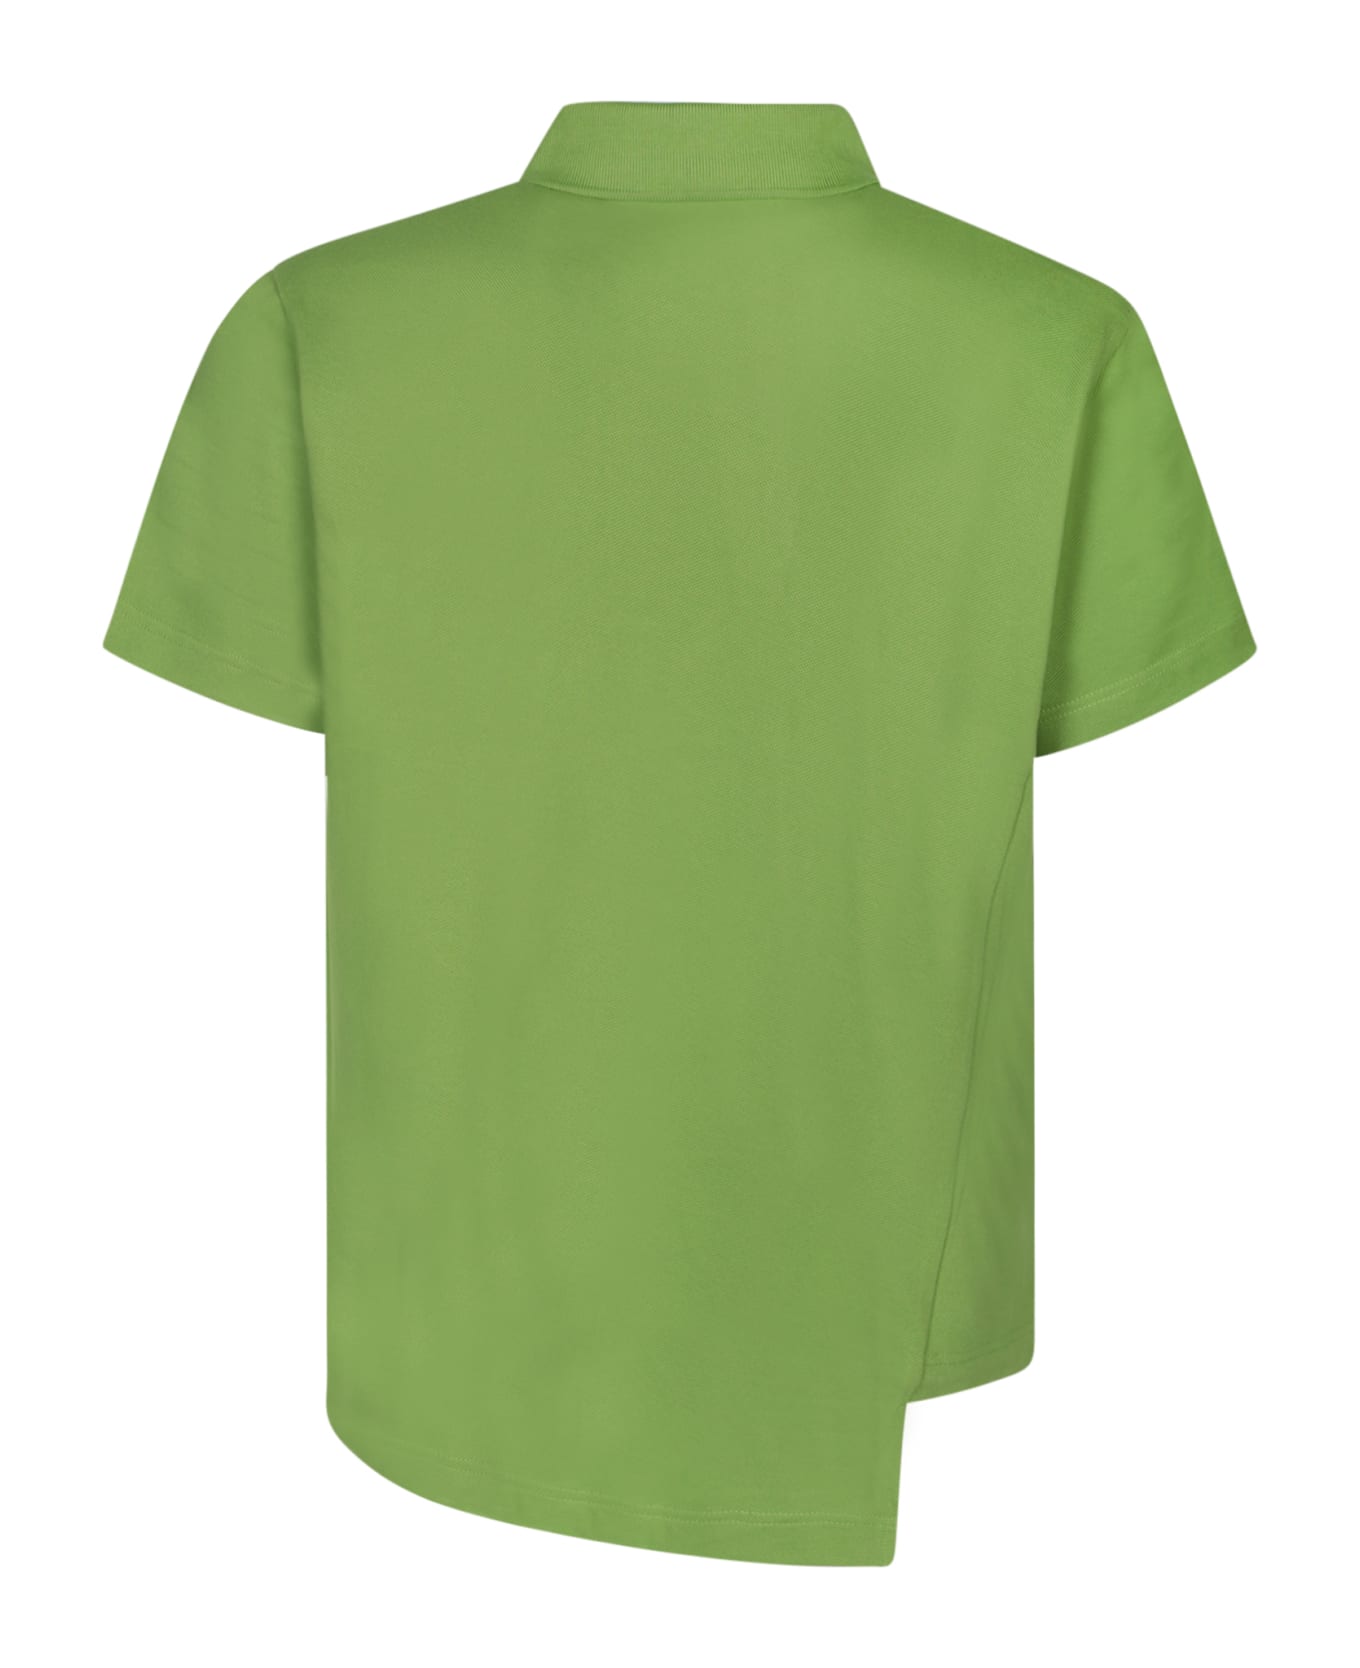 Comme des Garçons Shirt Boss Asymmetric Green Polo Shirt - Green